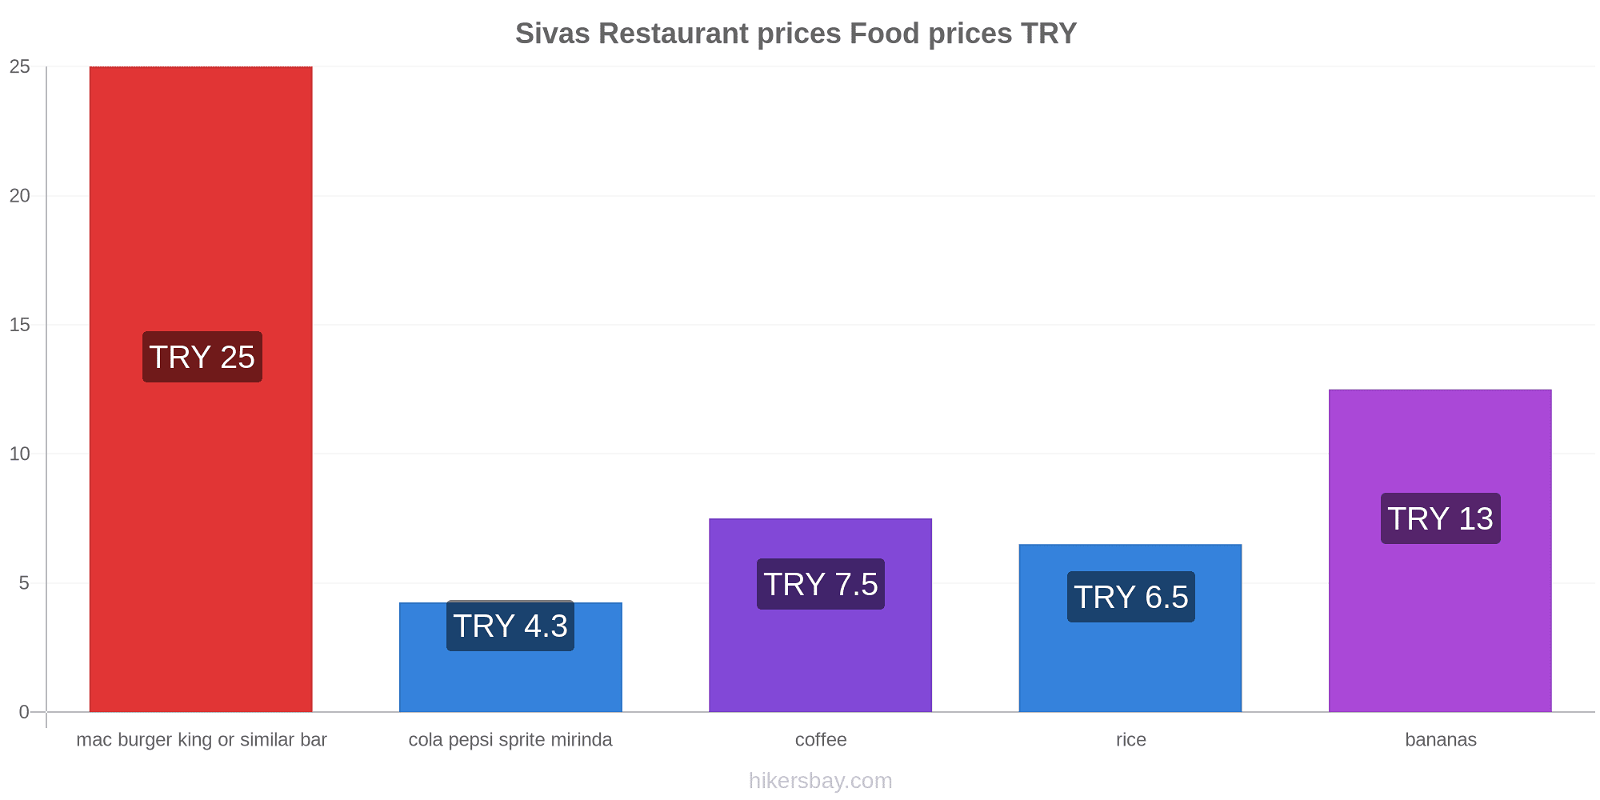 Sivas price changes hikersbay.com